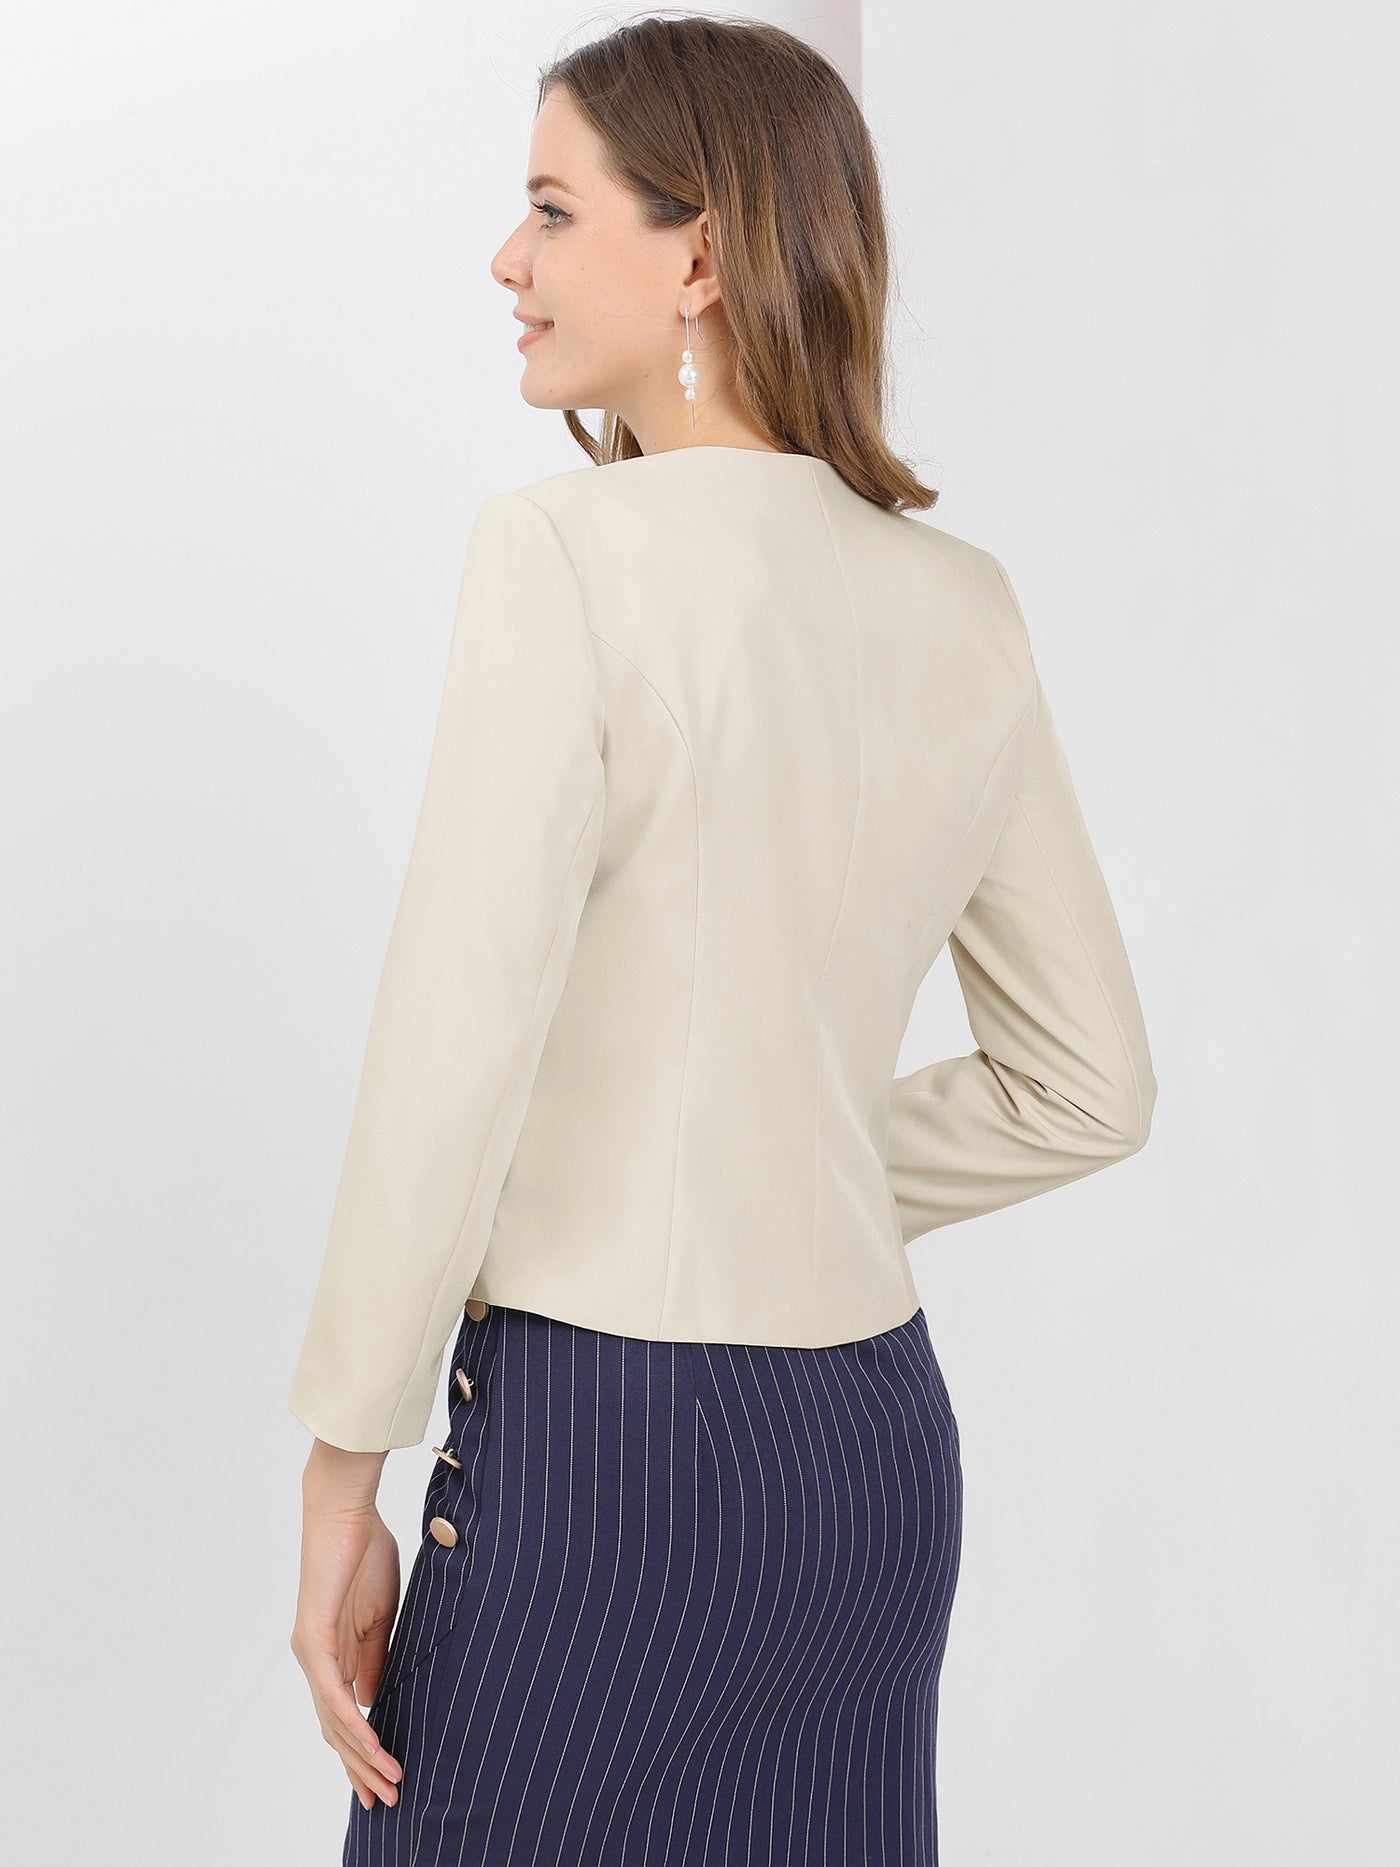 Allegra K Crop Collarless Blazers Suit Zip Decor Work Office Jacket Blazer